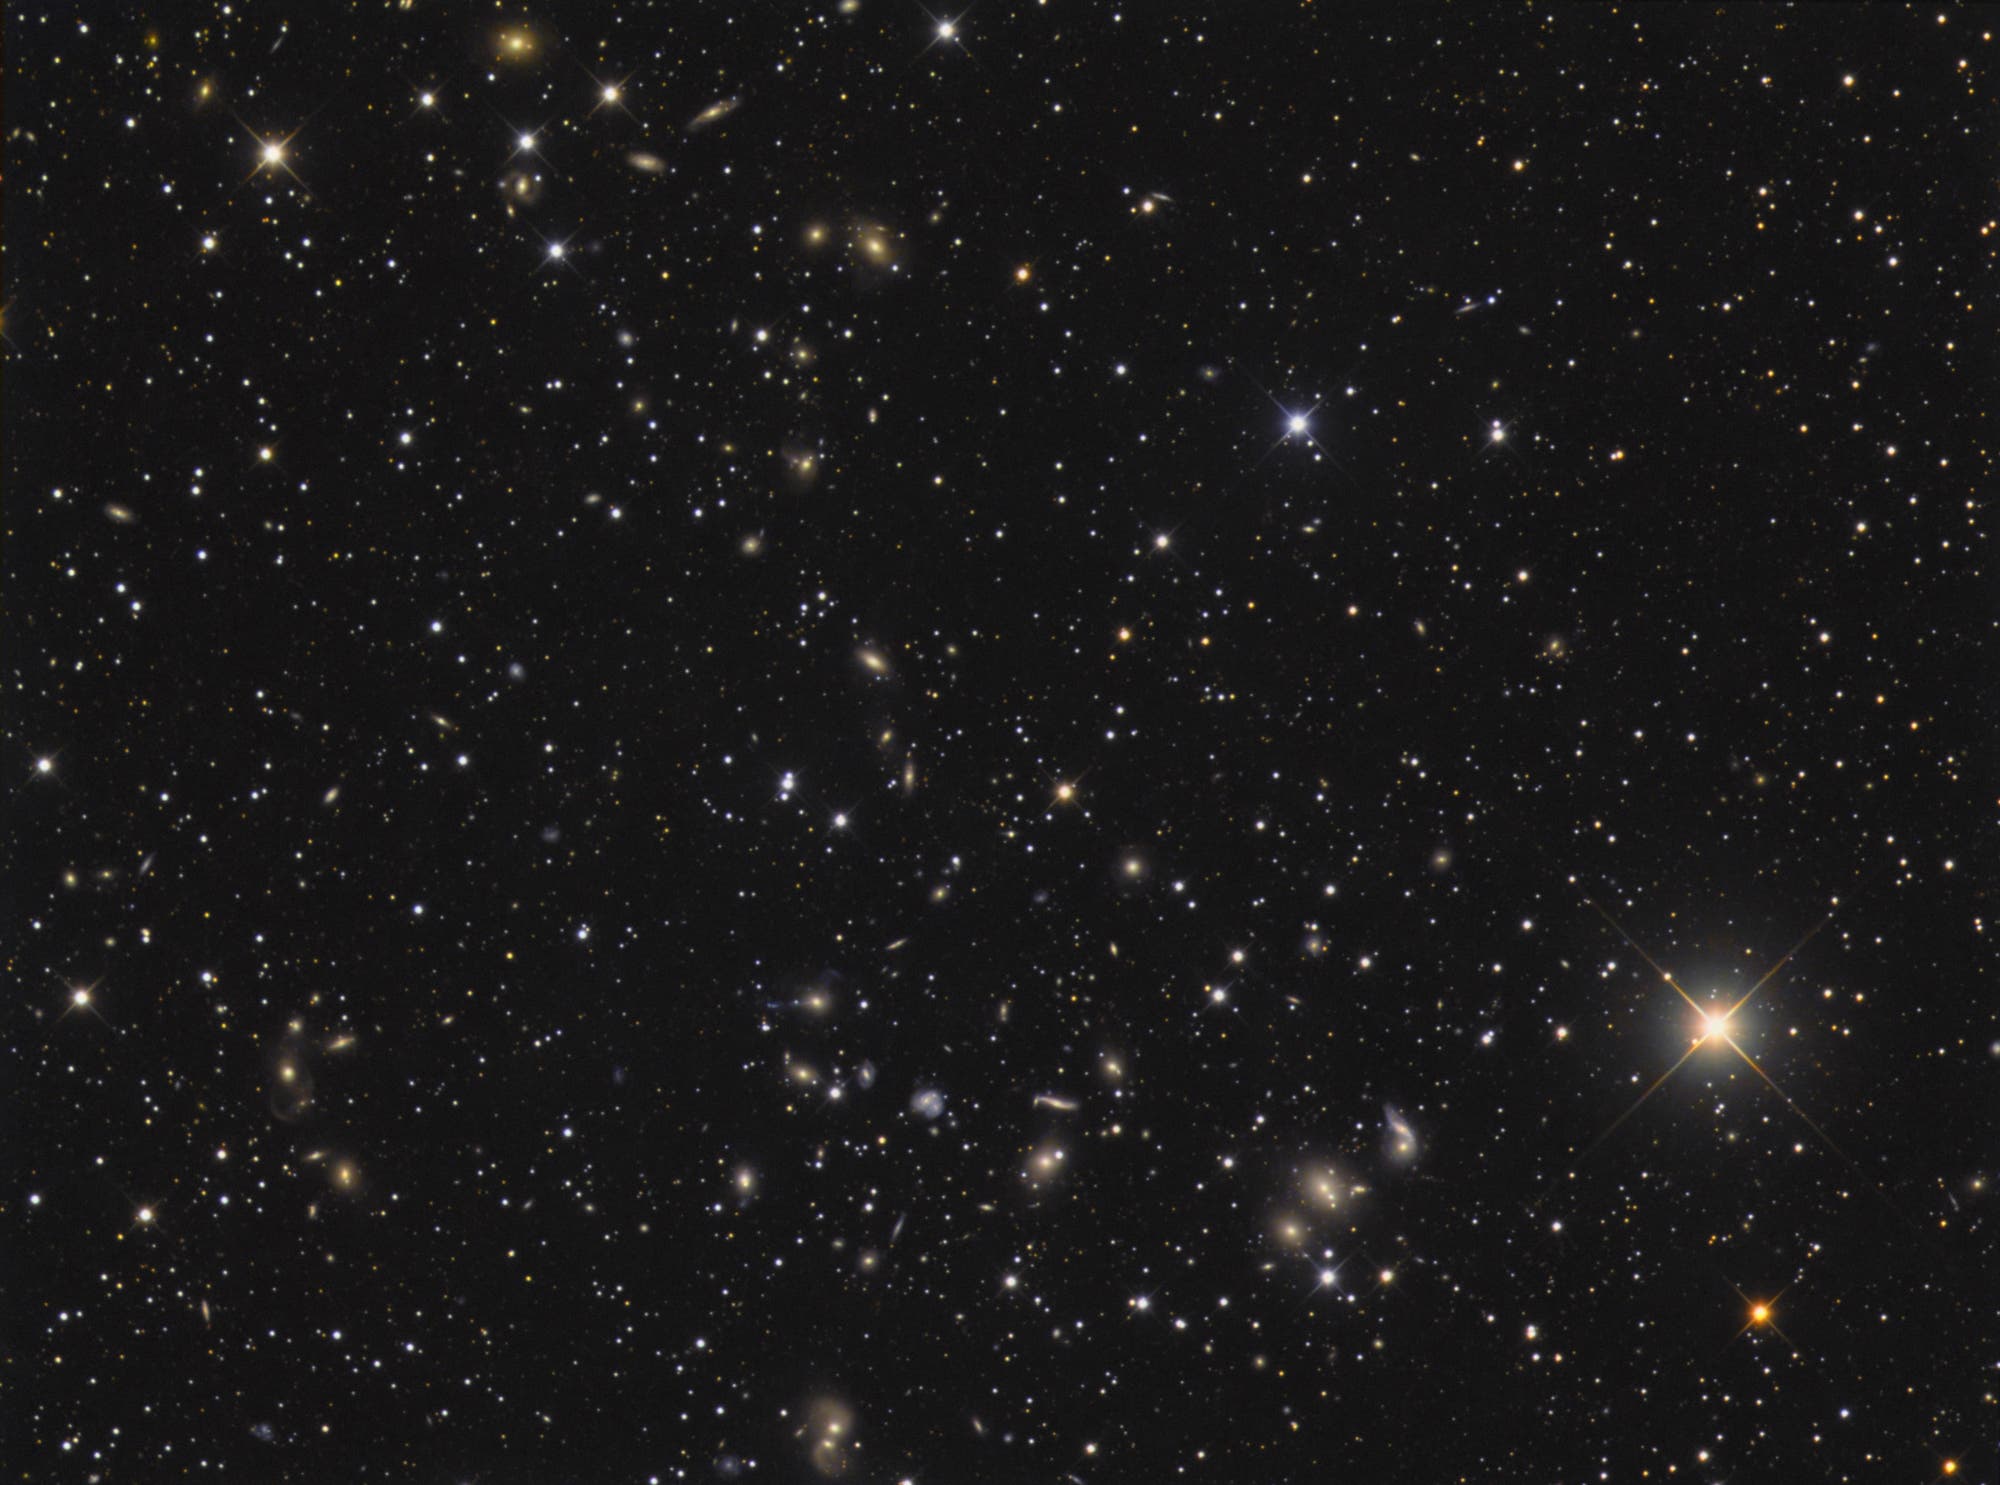 Galaxienhaufen Abell 2151 